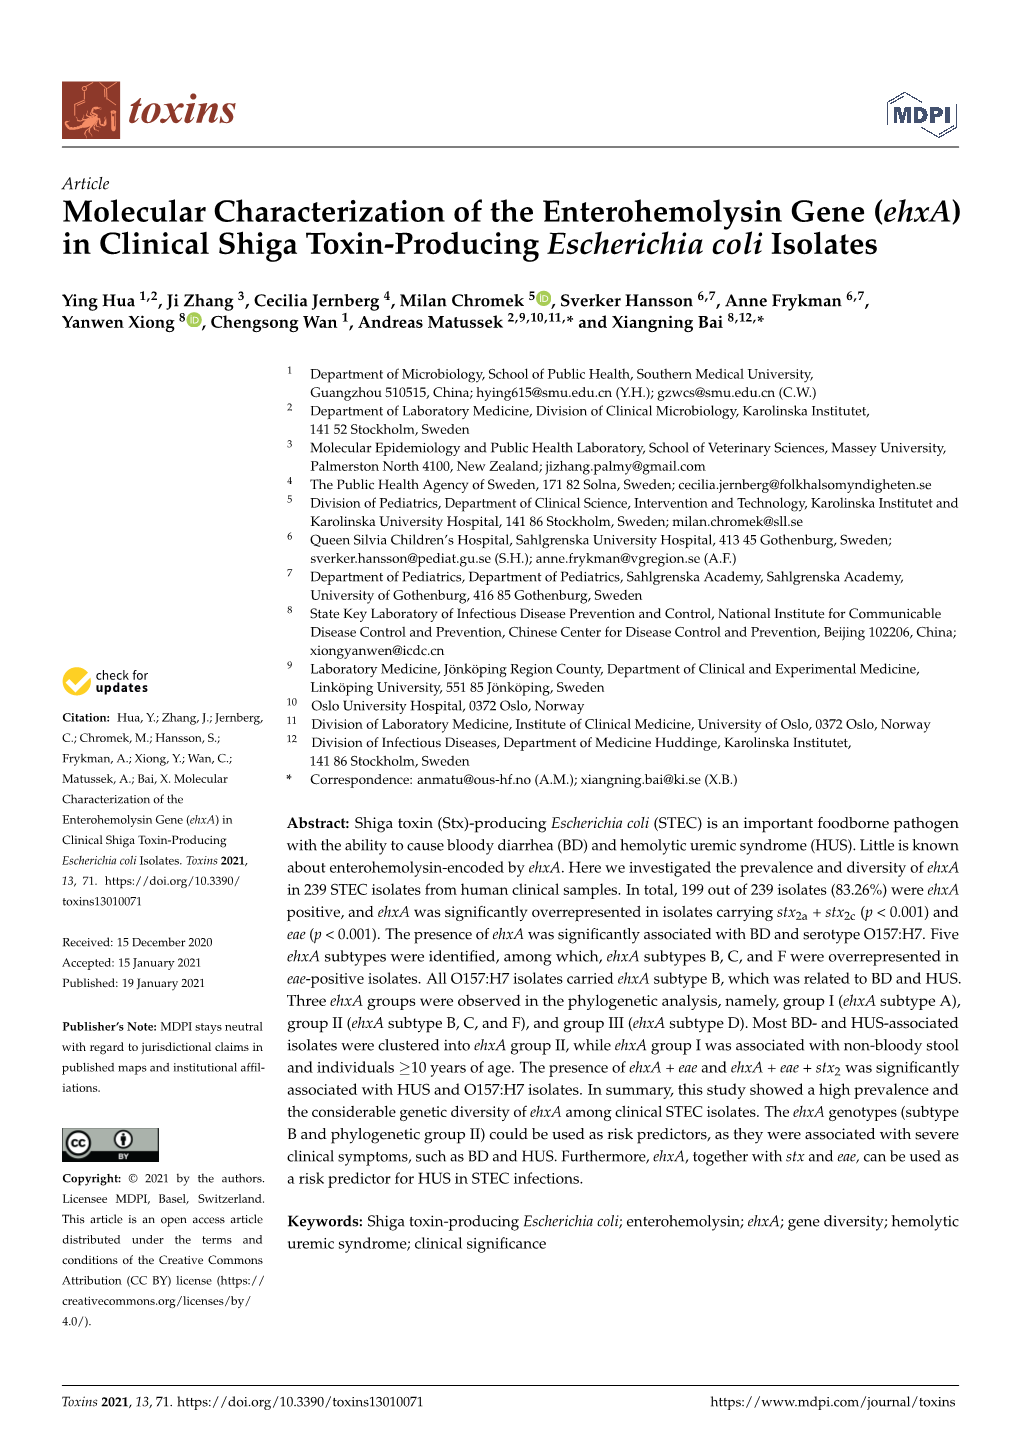 In Clinical Shiga Toxin-Producing Escherichia Coli Isolates